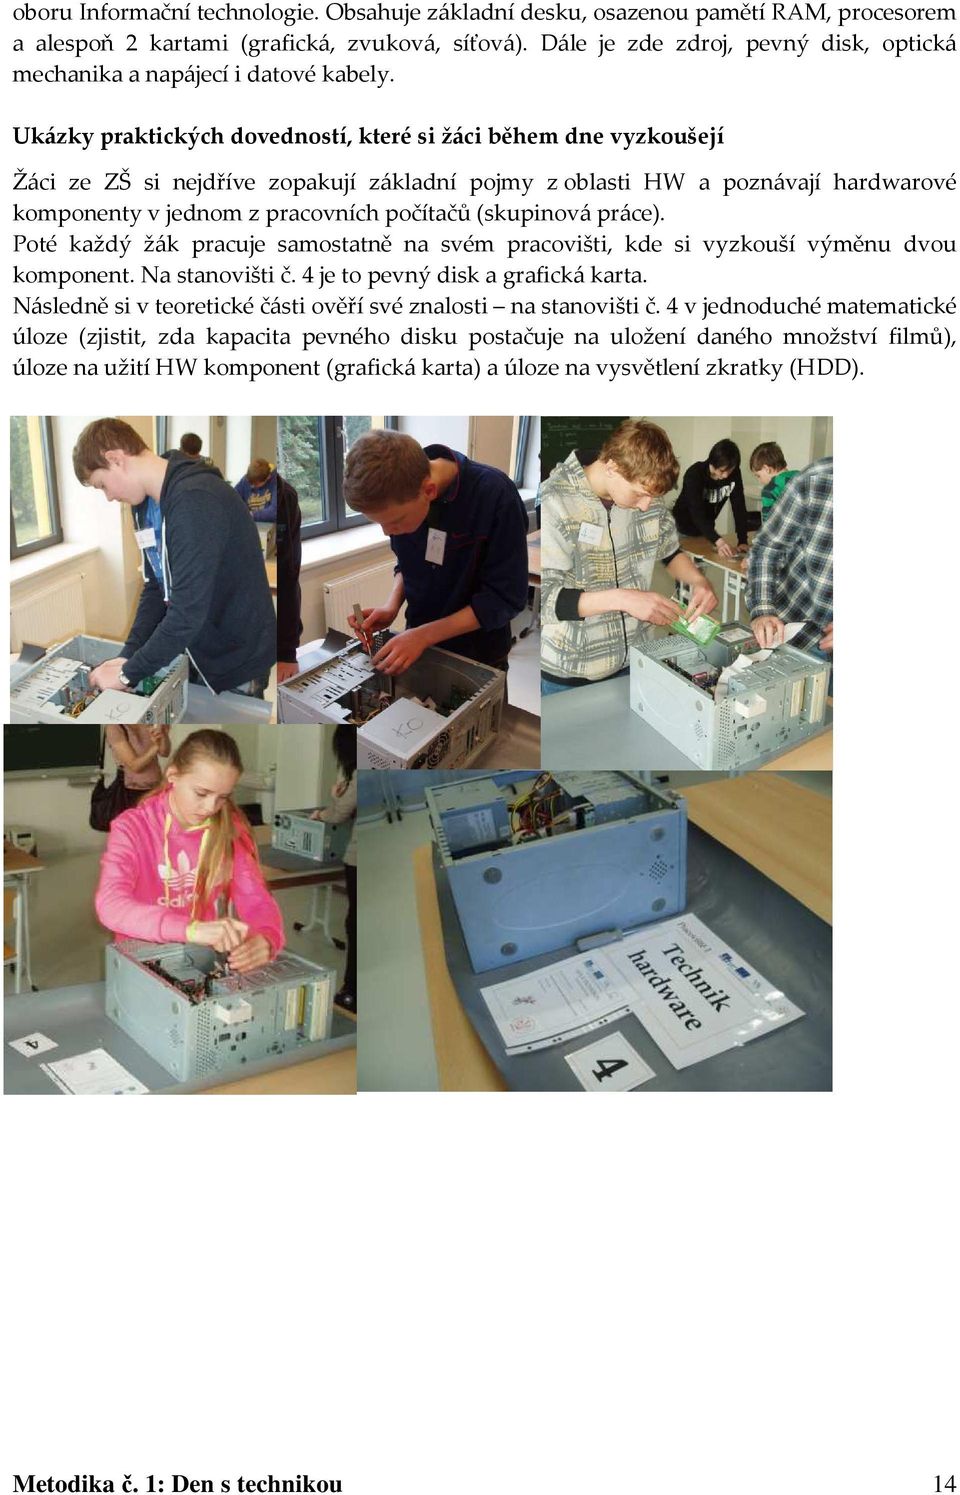 Ukázky praktických dovedností, které si žáci během dne vyzkoušejí Žáci ze ZŠ si nejdříve zopakují základní pojmy z oblasti HW a poznávají hardwarové komponenty v jednom z pracovních počítačů